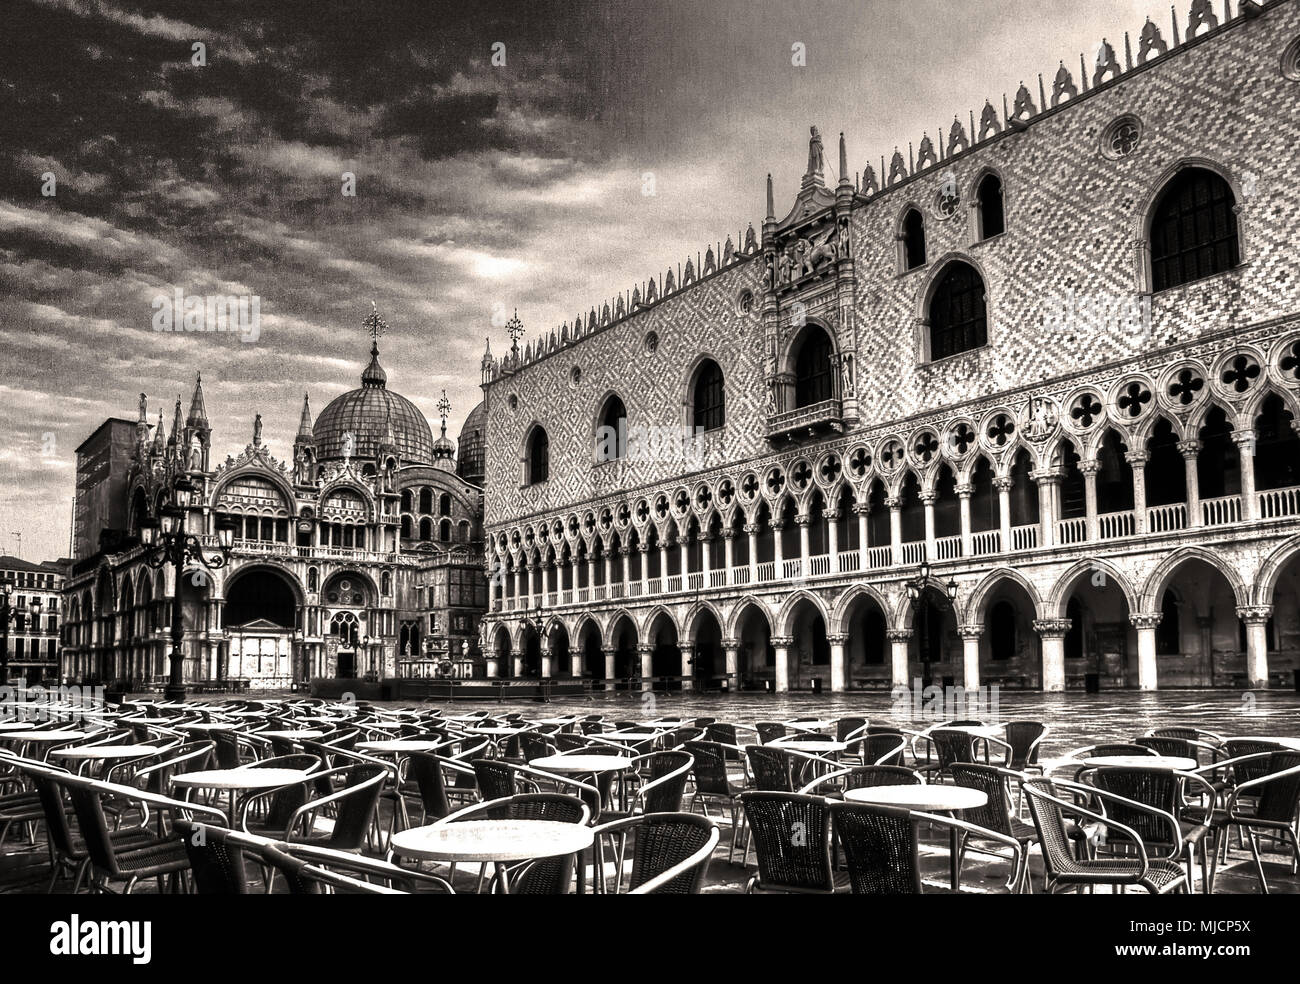 Italia, Venecia, la Plaza de San Marcos, la basílica de San Marcos, Palacio Ducal Foto de stock